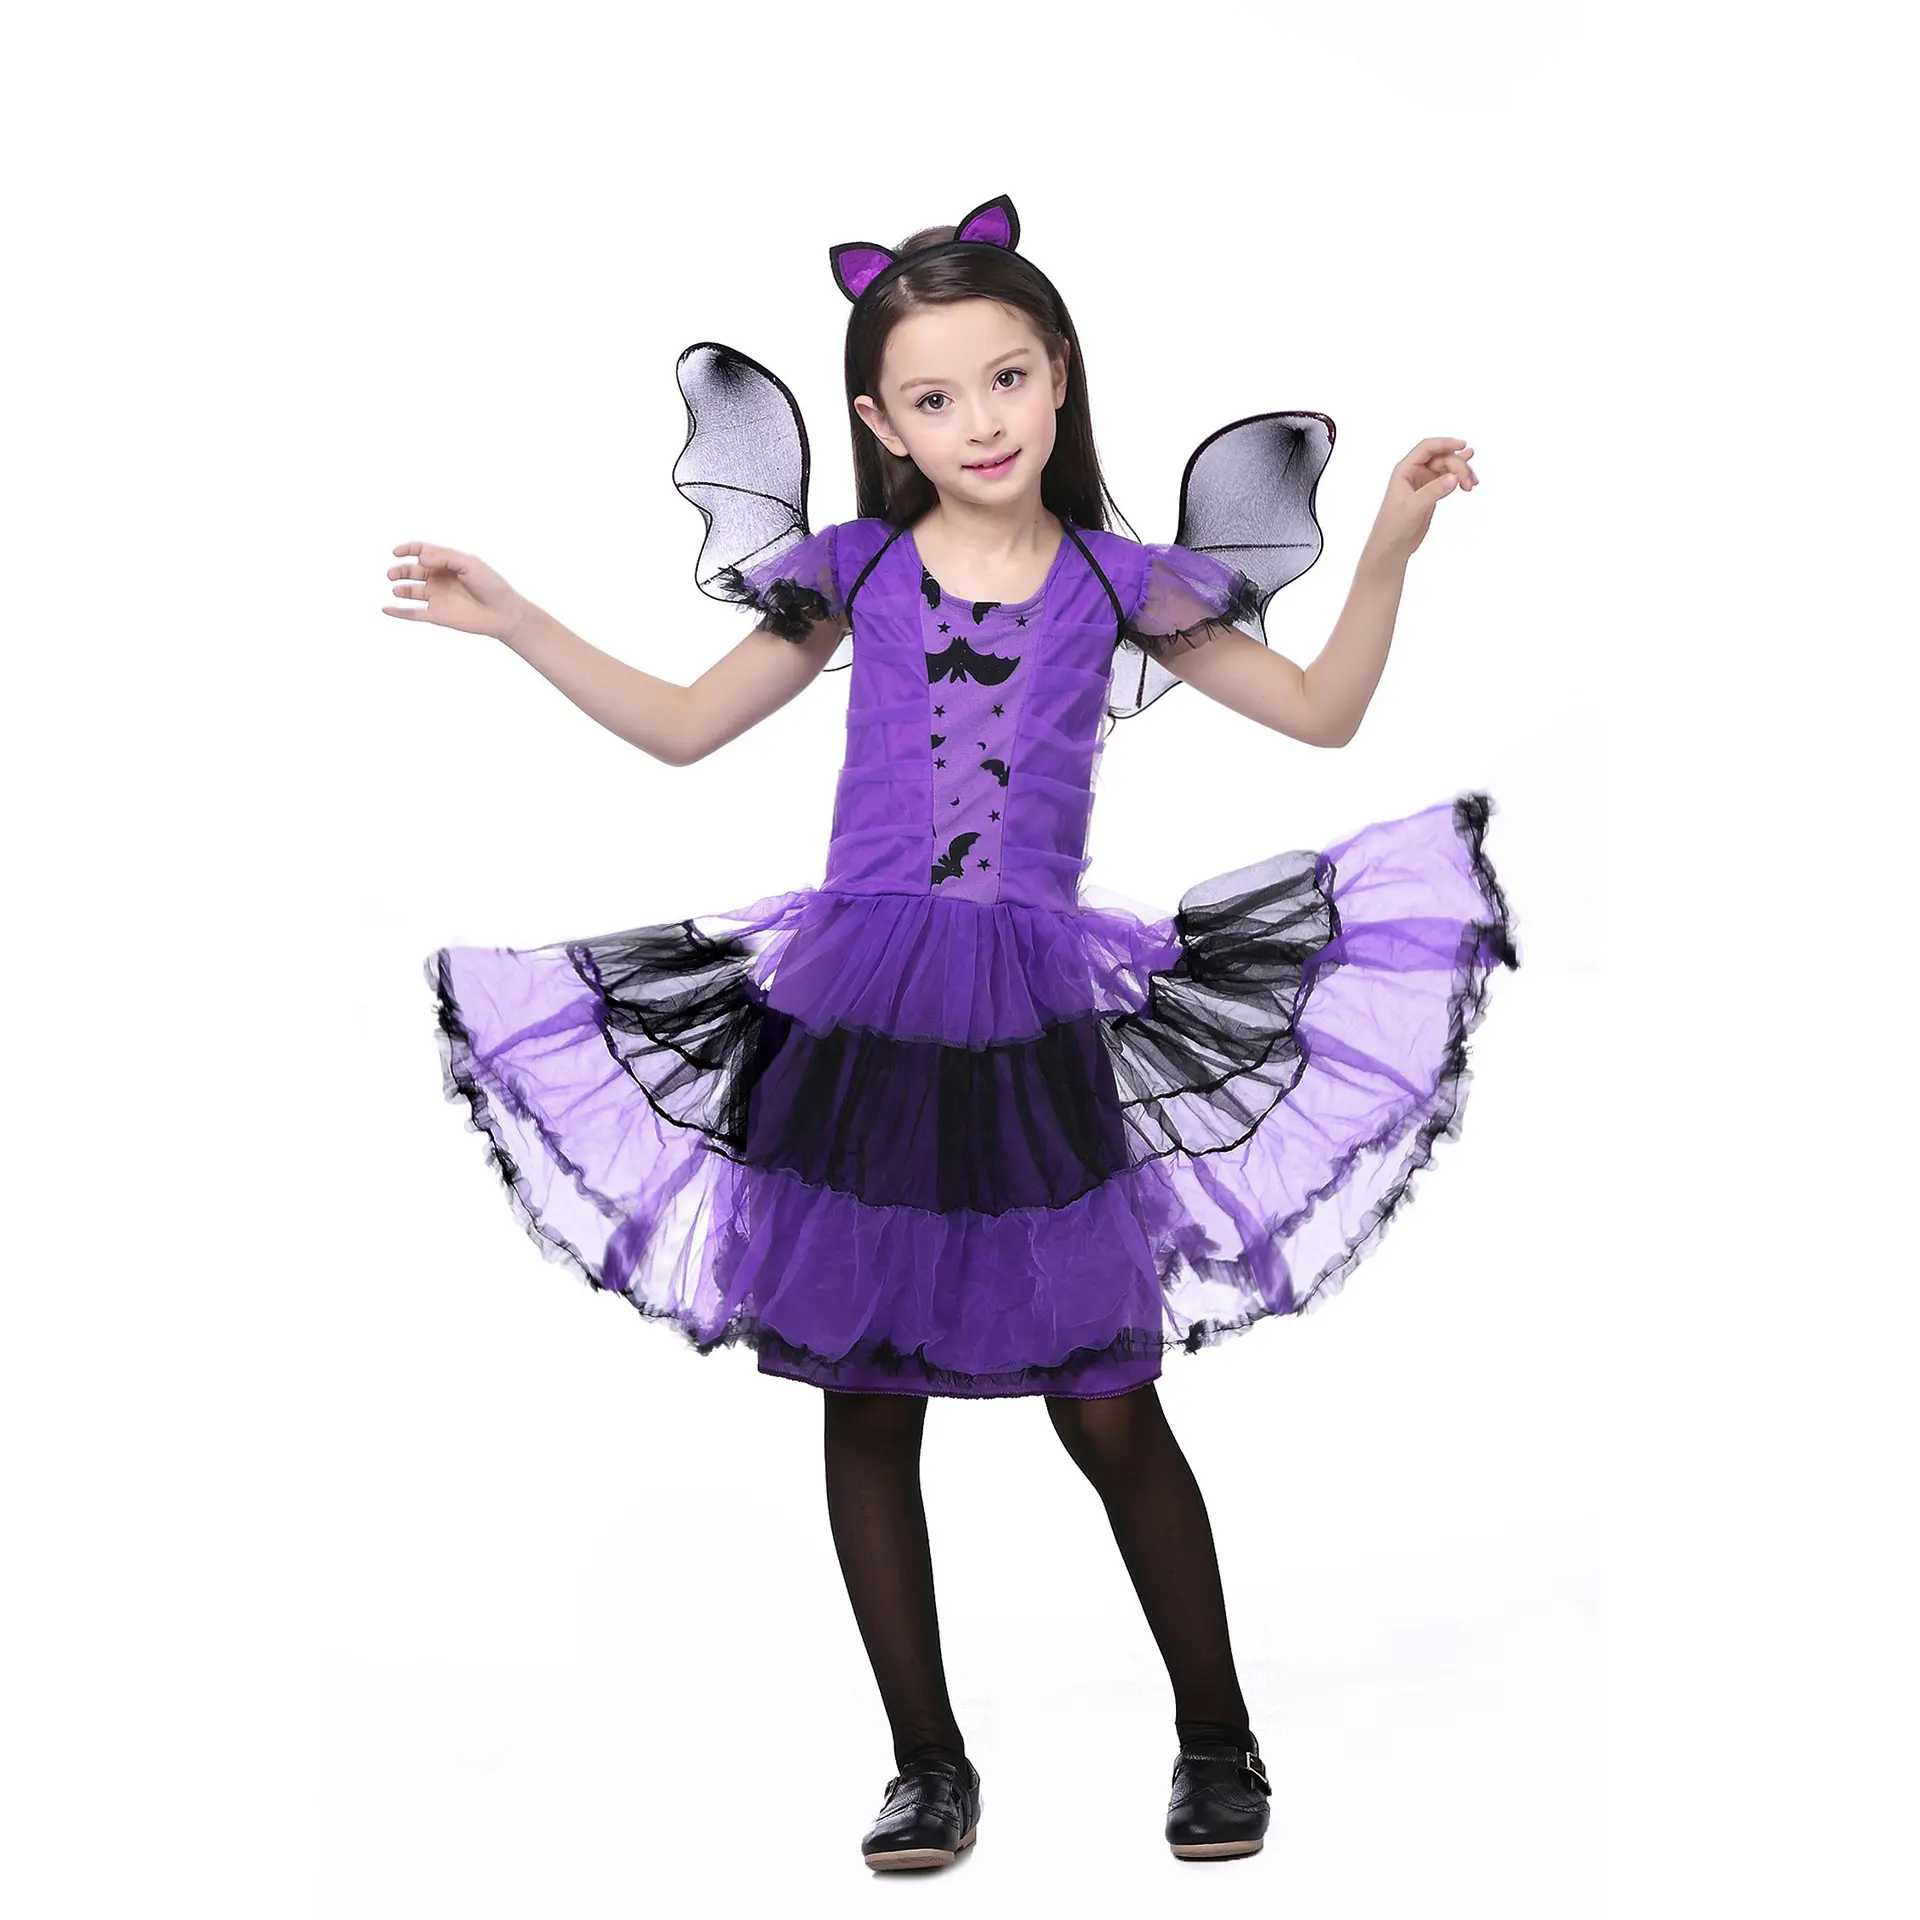 Новый модный красивый костюм для Хэллоуина для девочек, костюмы для косплея летучей мыши с крыльями летучей мыши и повязкой на голову